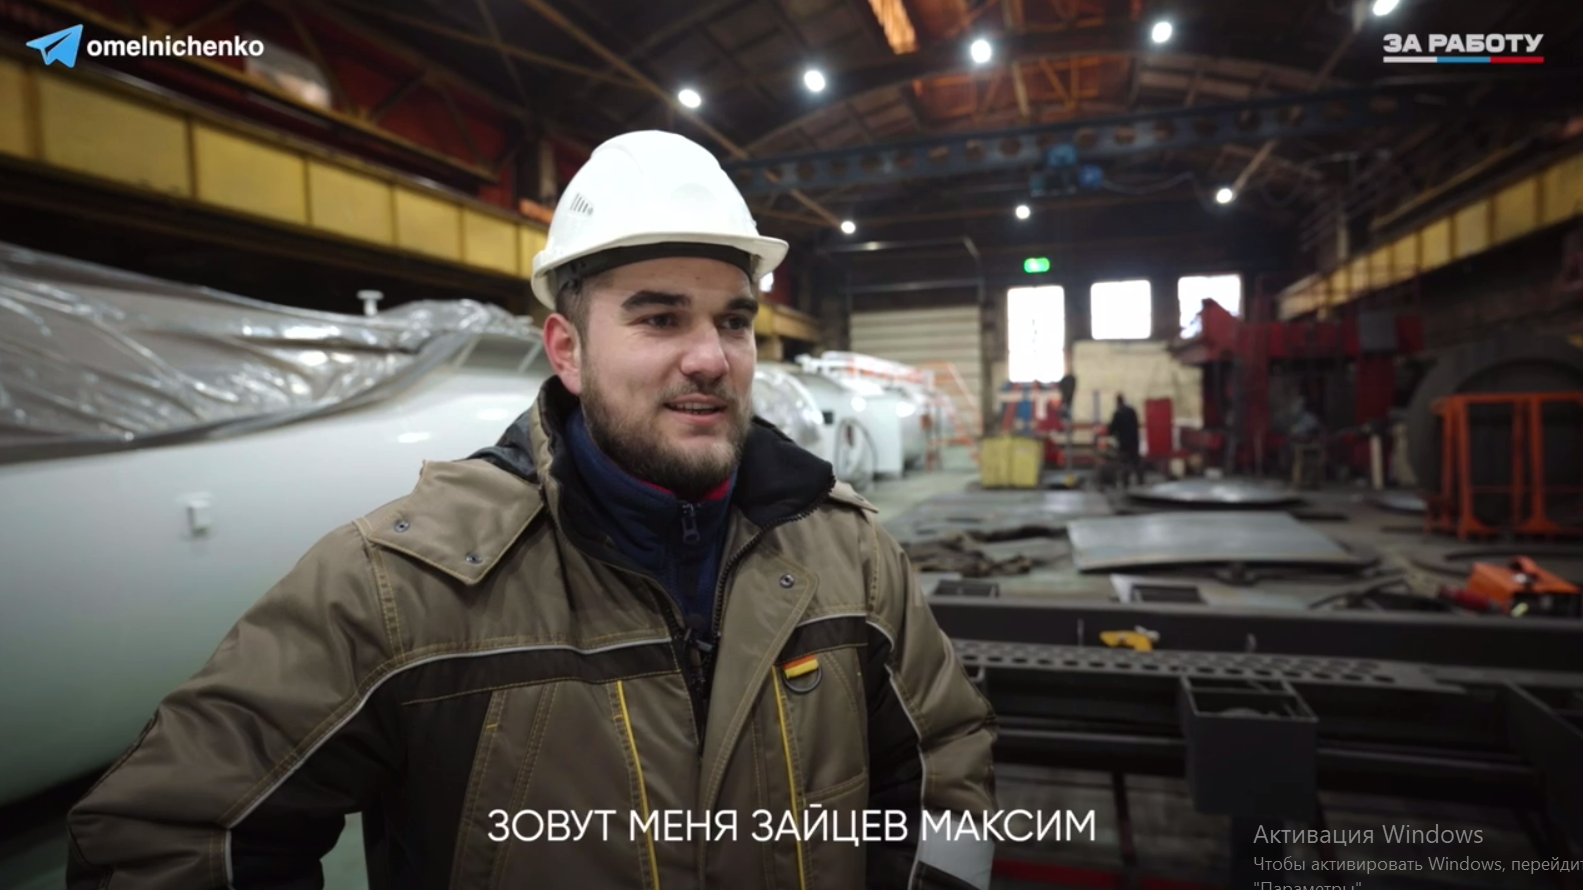 Мельниченко рассказал о Максиме Зайцеве, который стал замначальника производства 